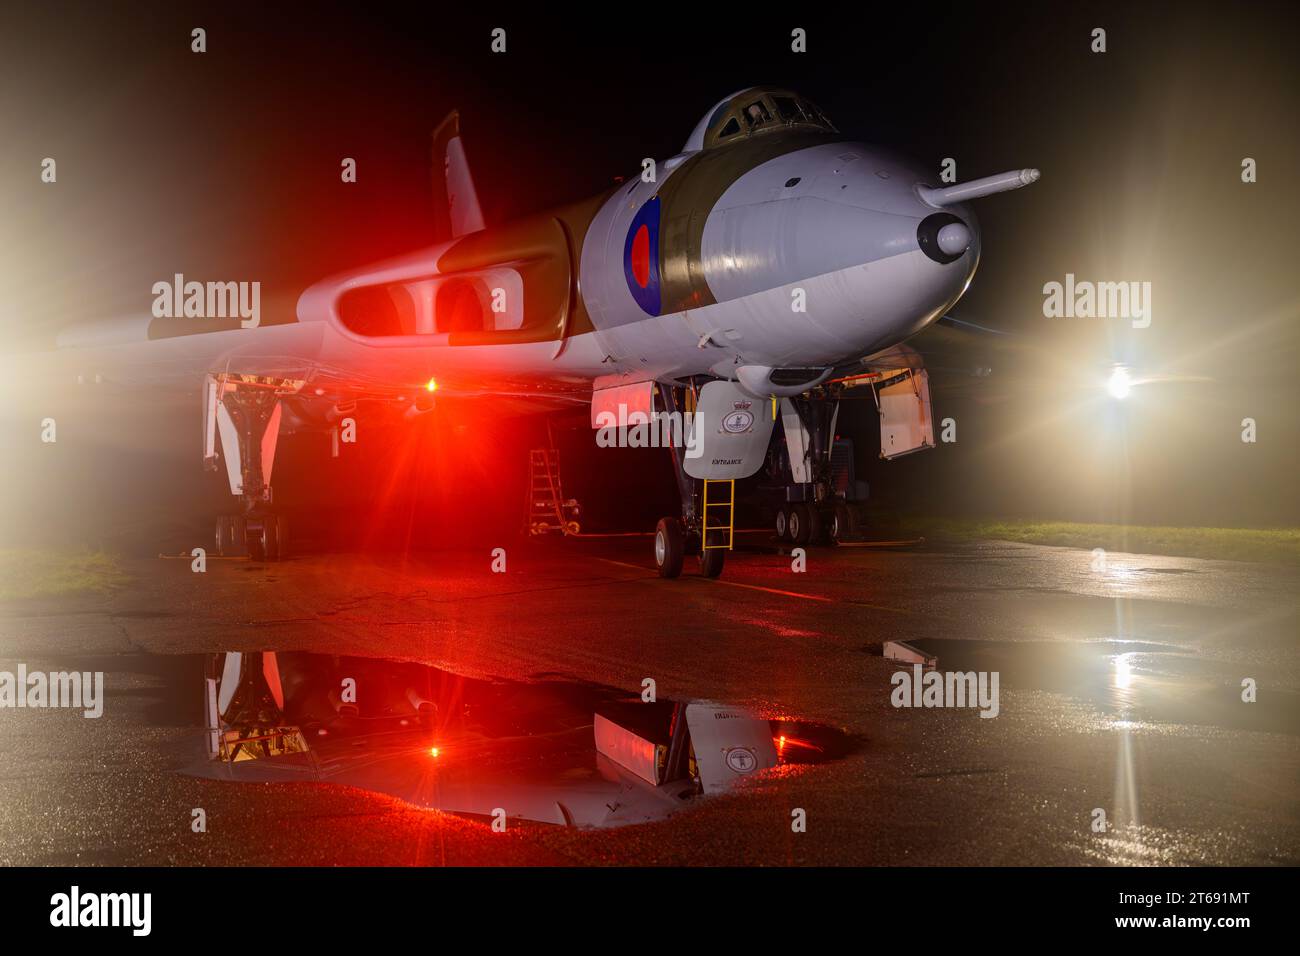 Avro Vulcan XM655 di notte con porte bomba aperte e luci degli aerei accese Foto Stock